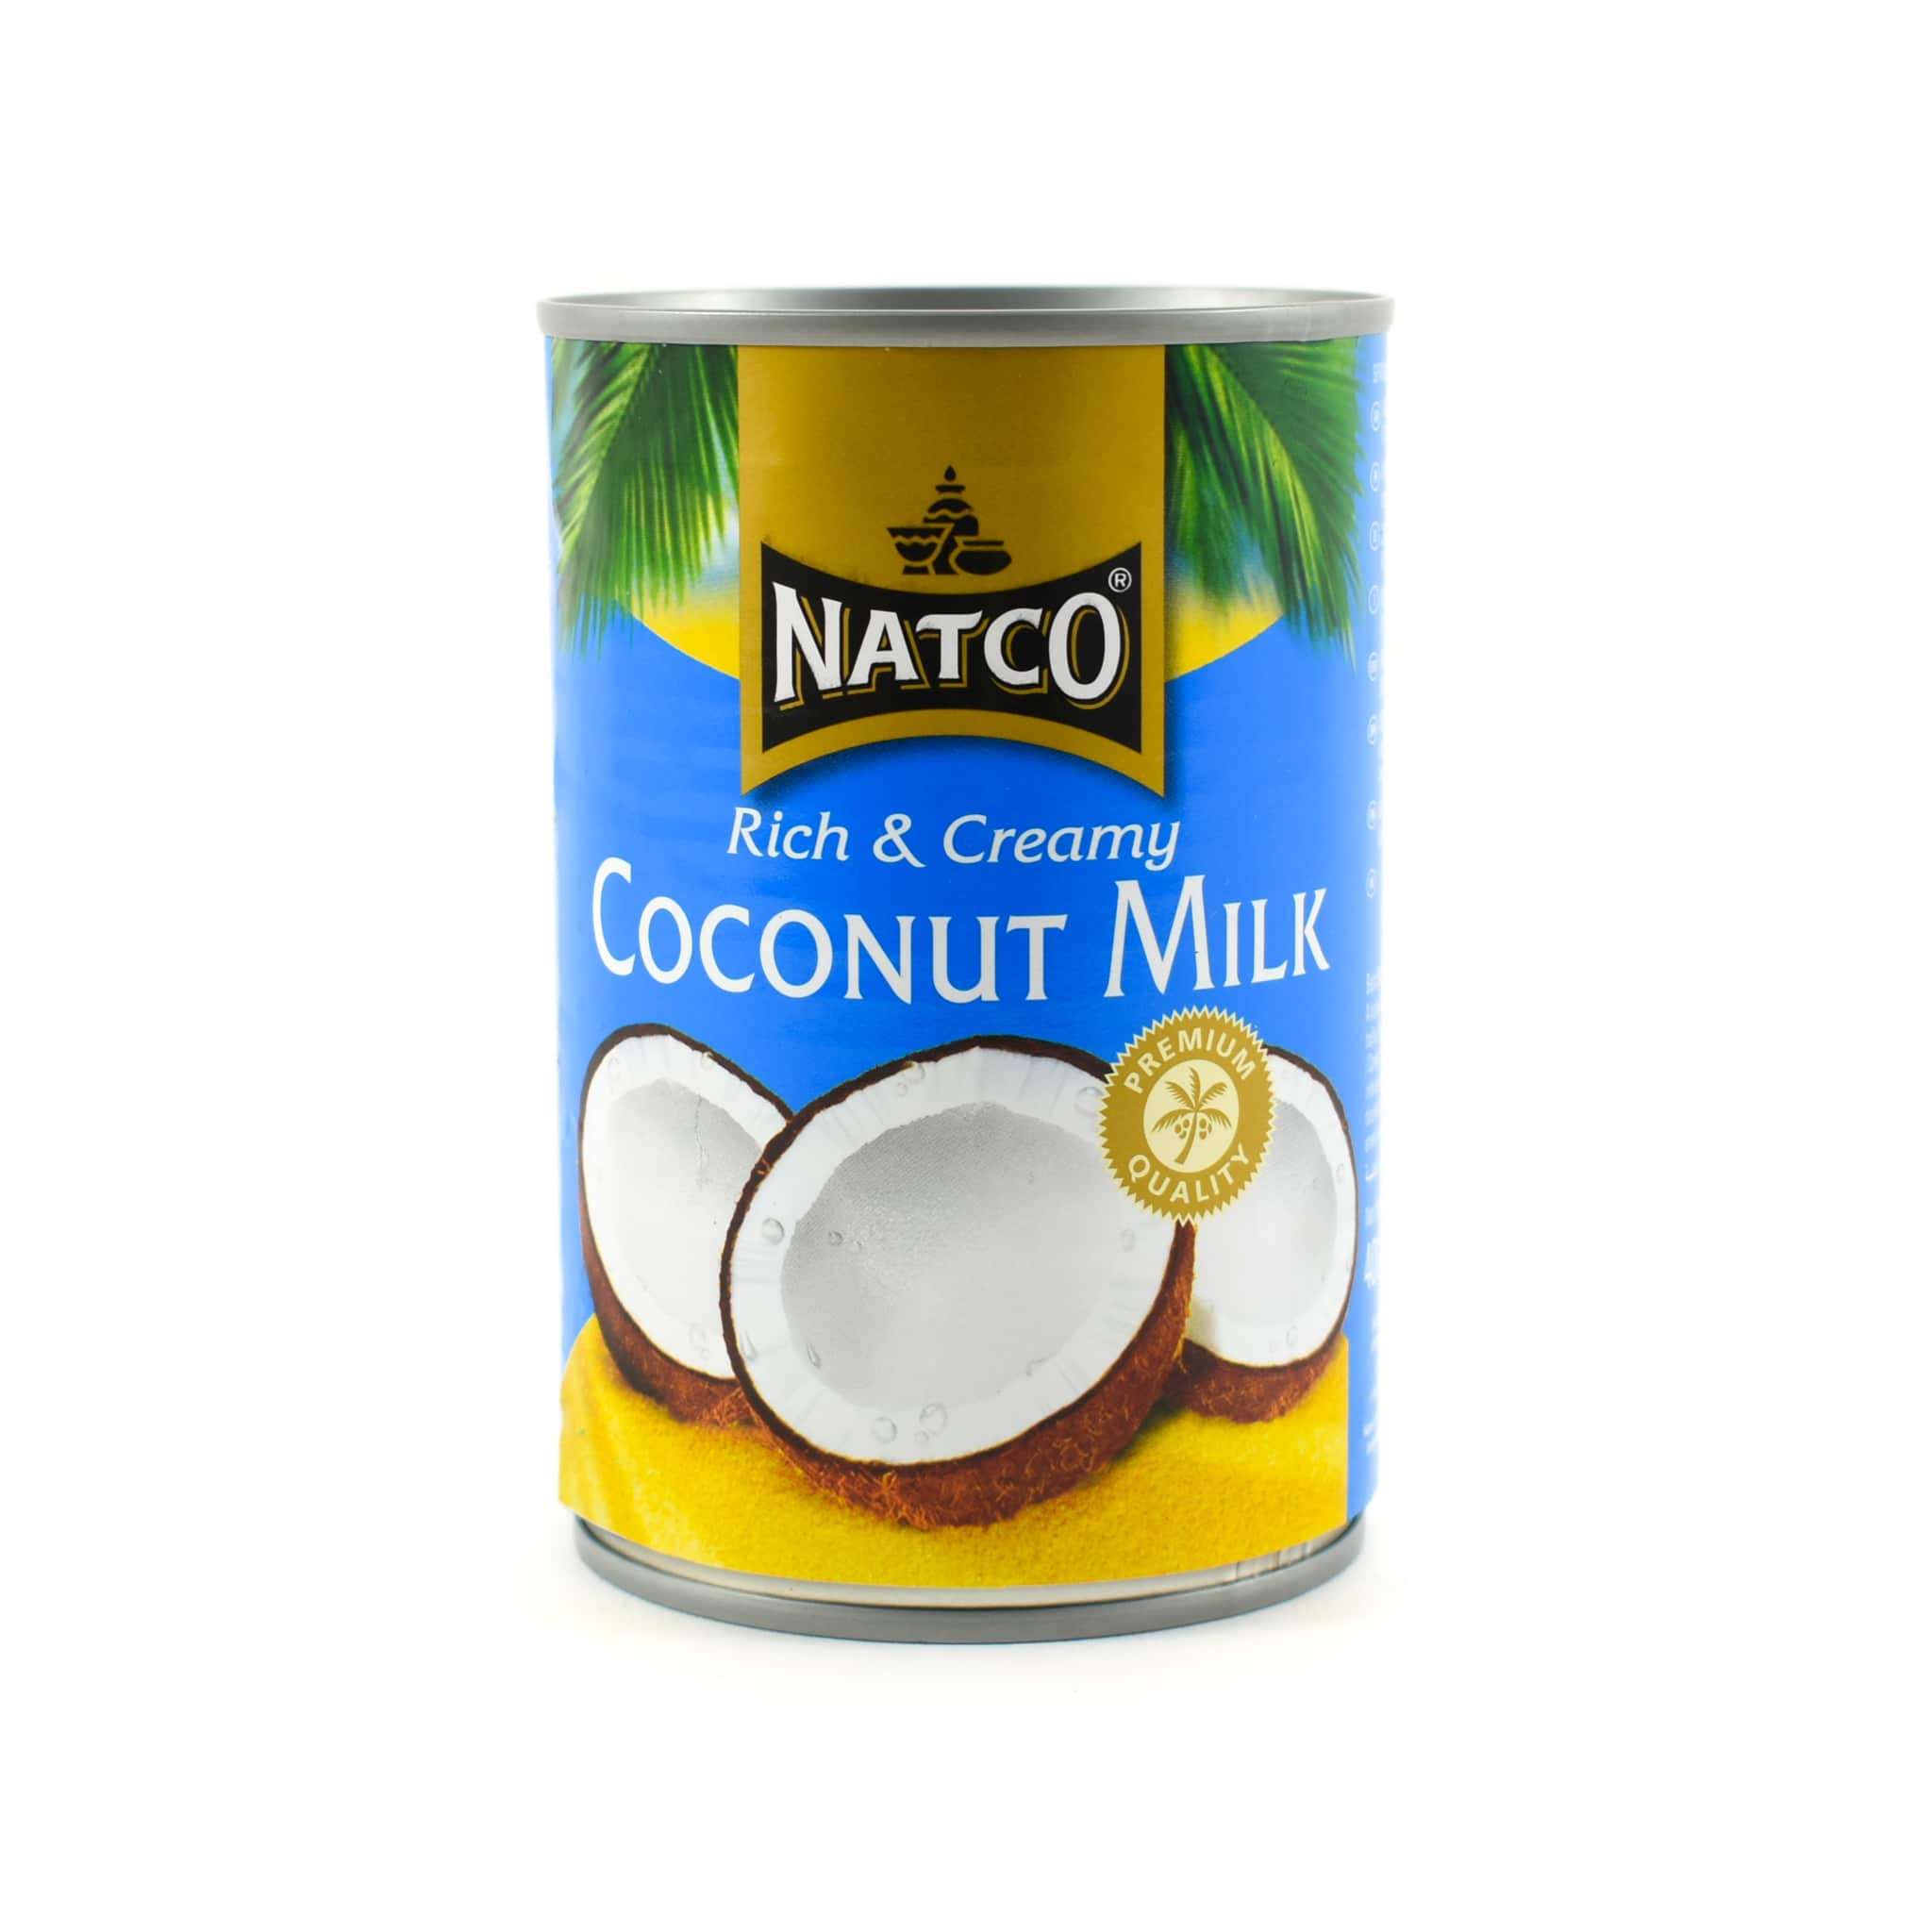 Natco Rich & Creamy Coconut Milk 400g